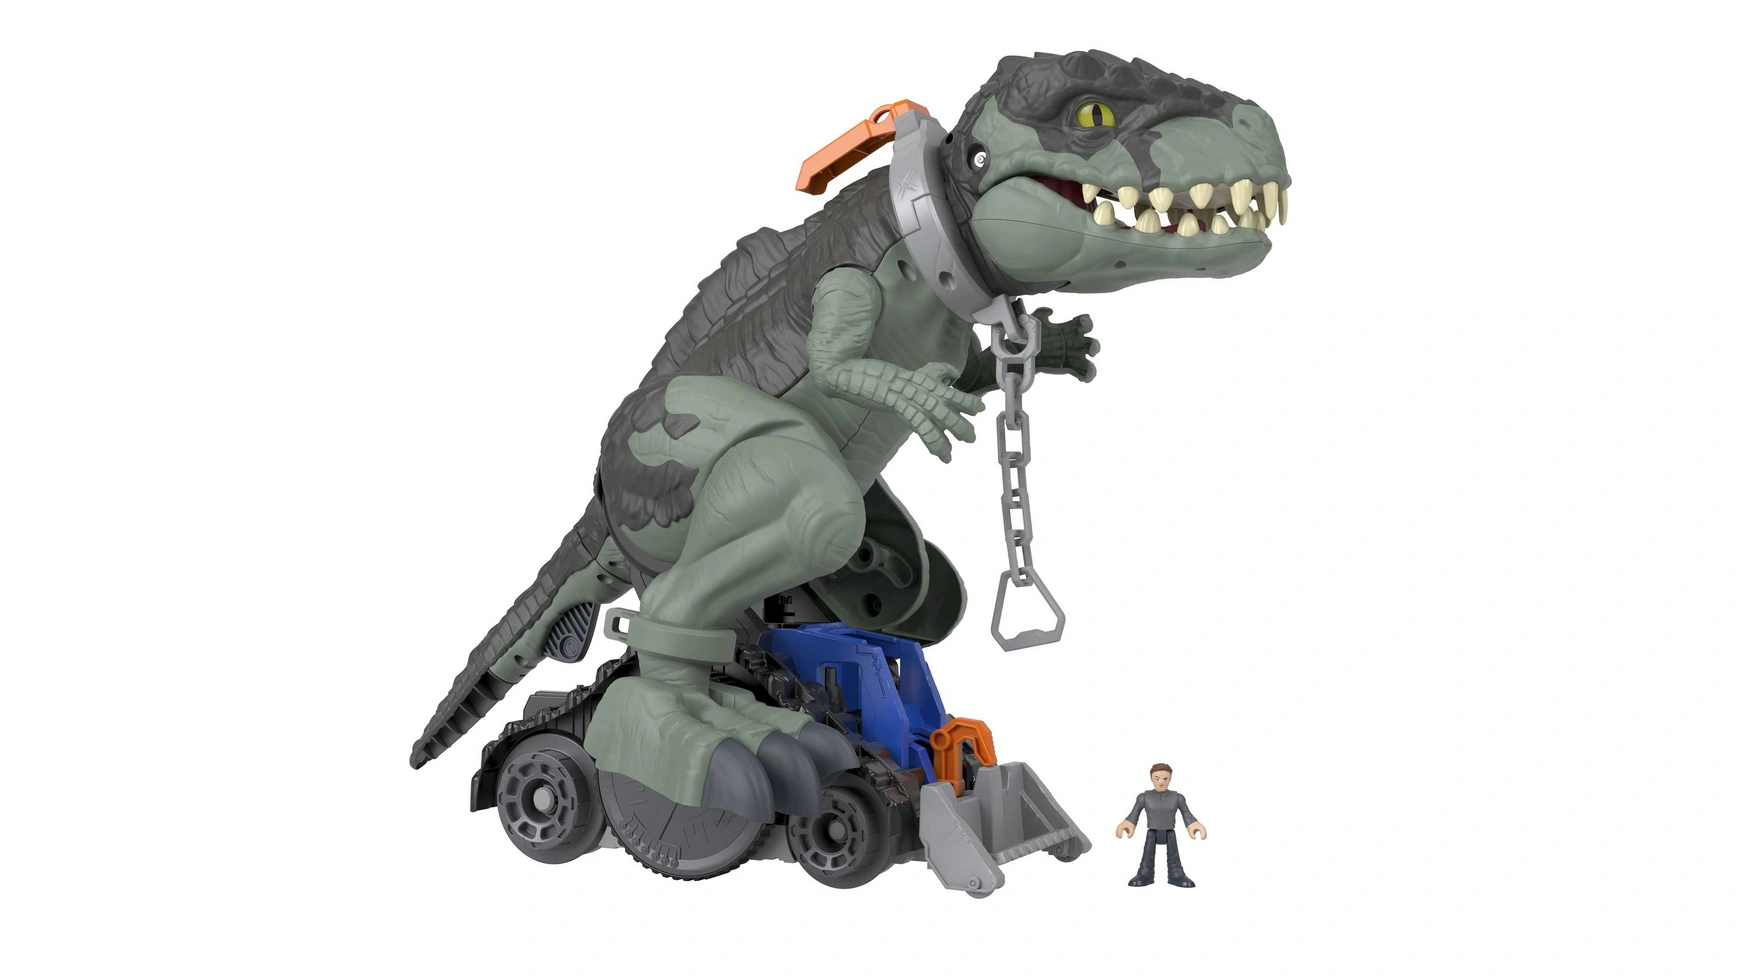 Imaginext Jurassic World Mega Stomp & Rumble Гига Дино цена и фото